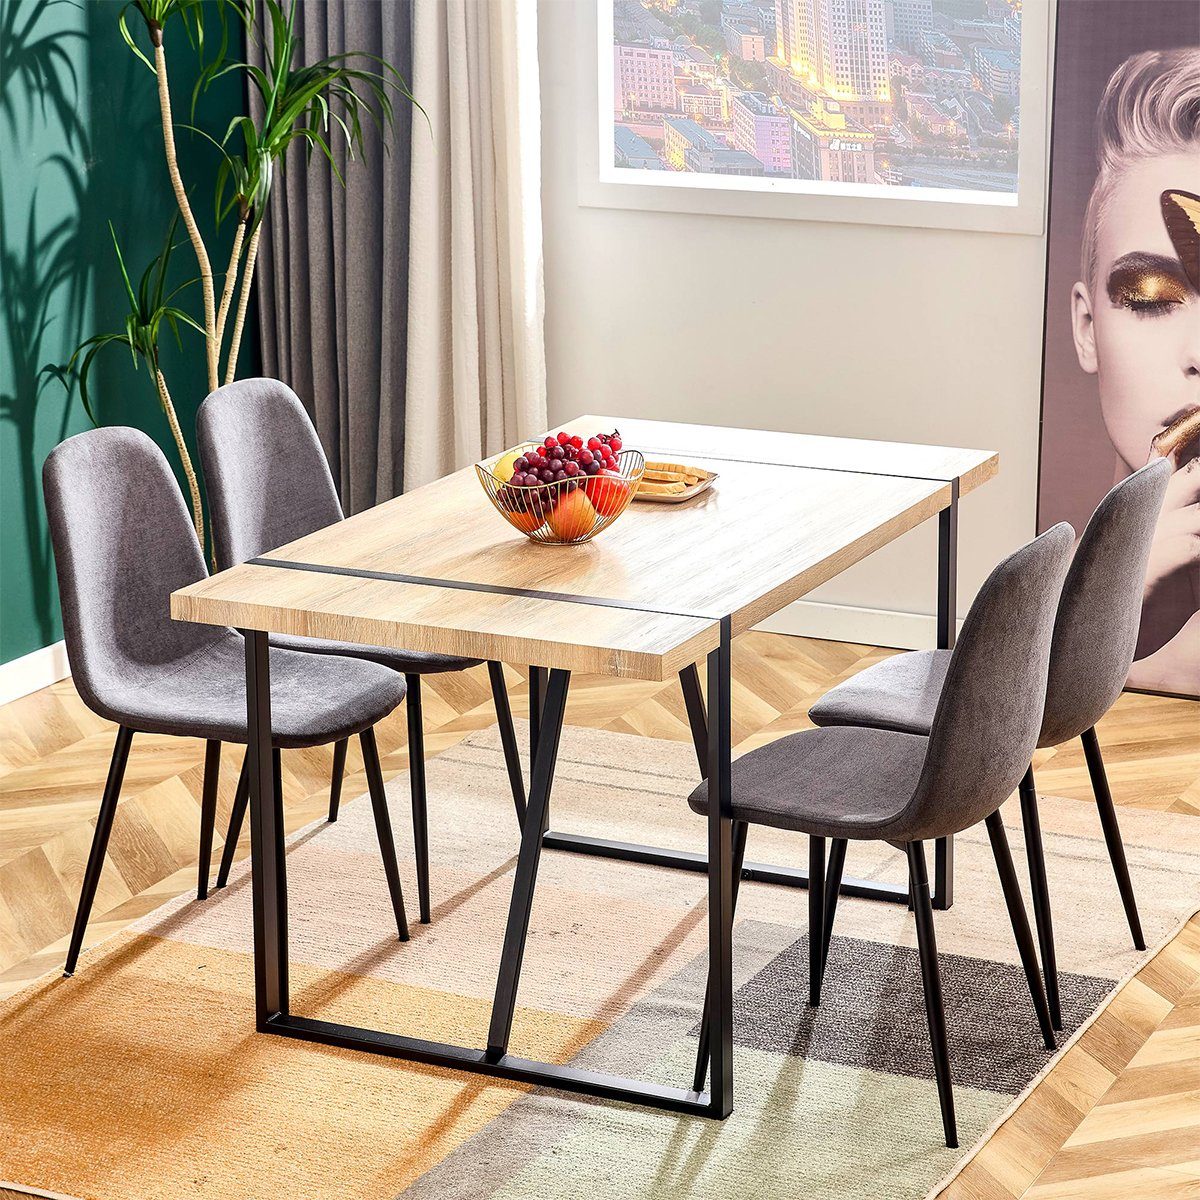 XDeer Esszimmerstuhl 4er Set Esszimmerstühle in Modernem Design, Gepolsterte Sitzfläche aus Leinen Beine aus Metall